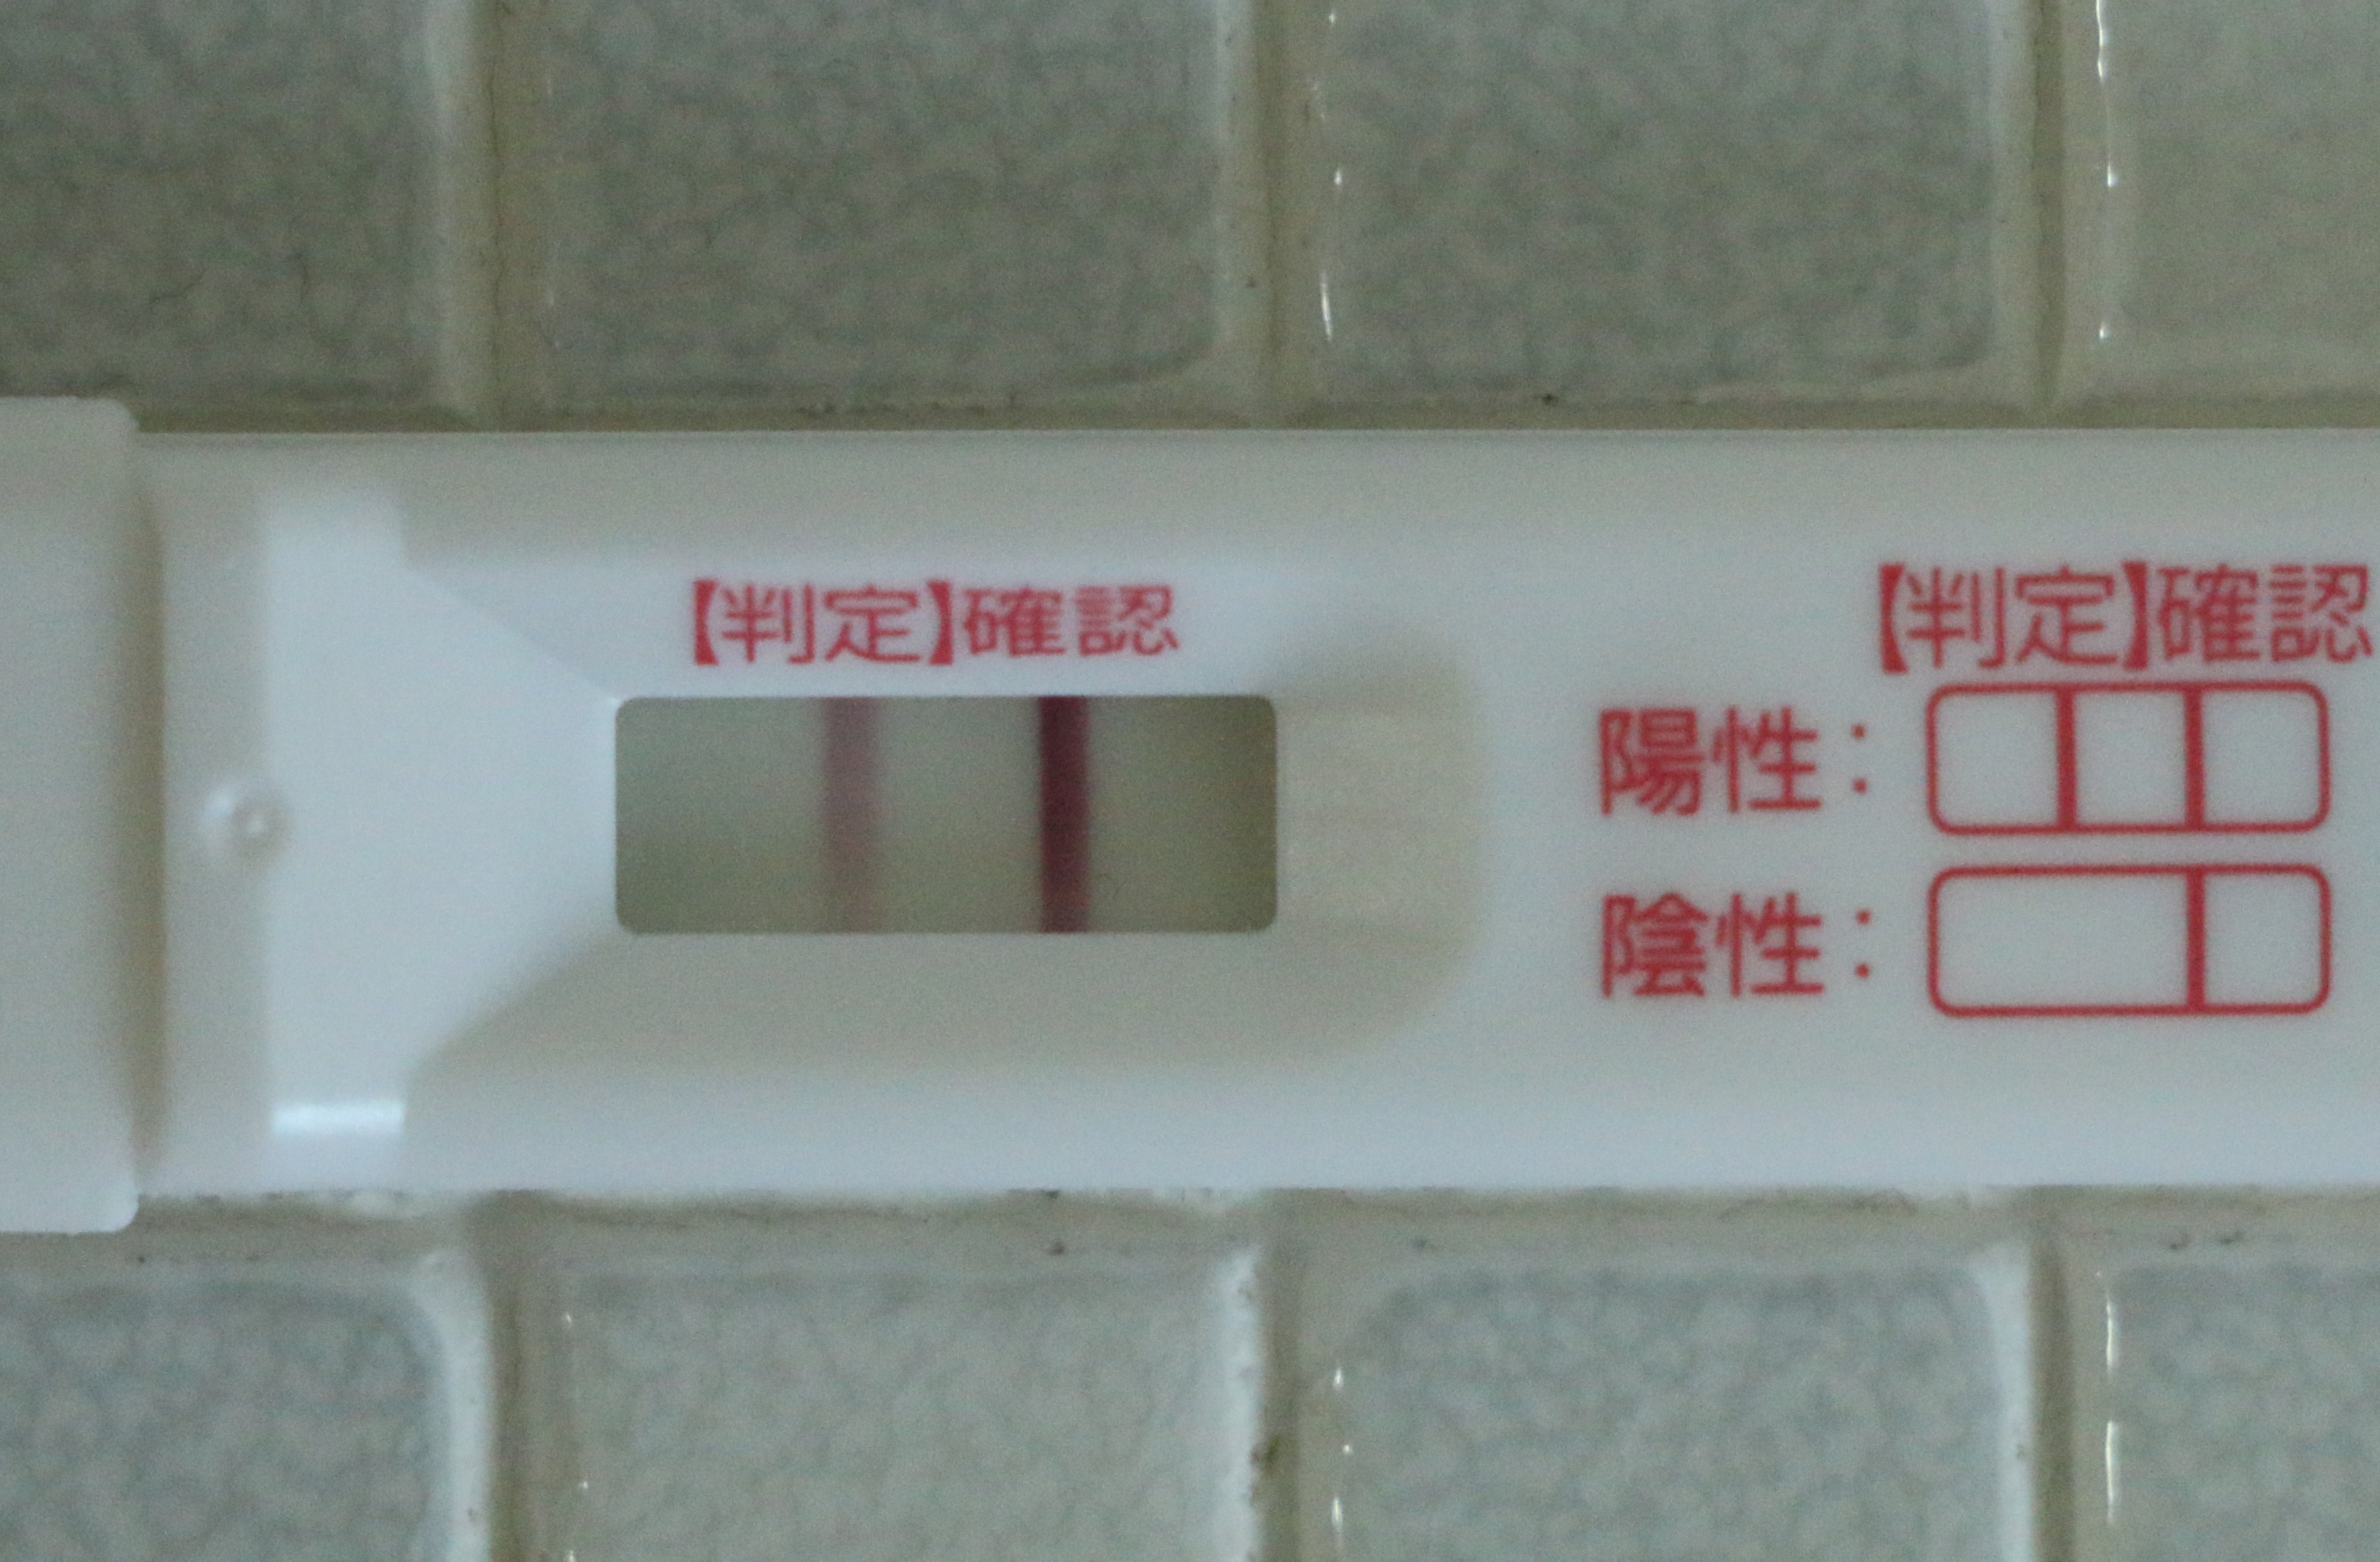 うっすら ドゥーテスト 妊娠検査薬(ドゥーテスト)をフライング(高温期11日目)うっすら線が出た後の経過